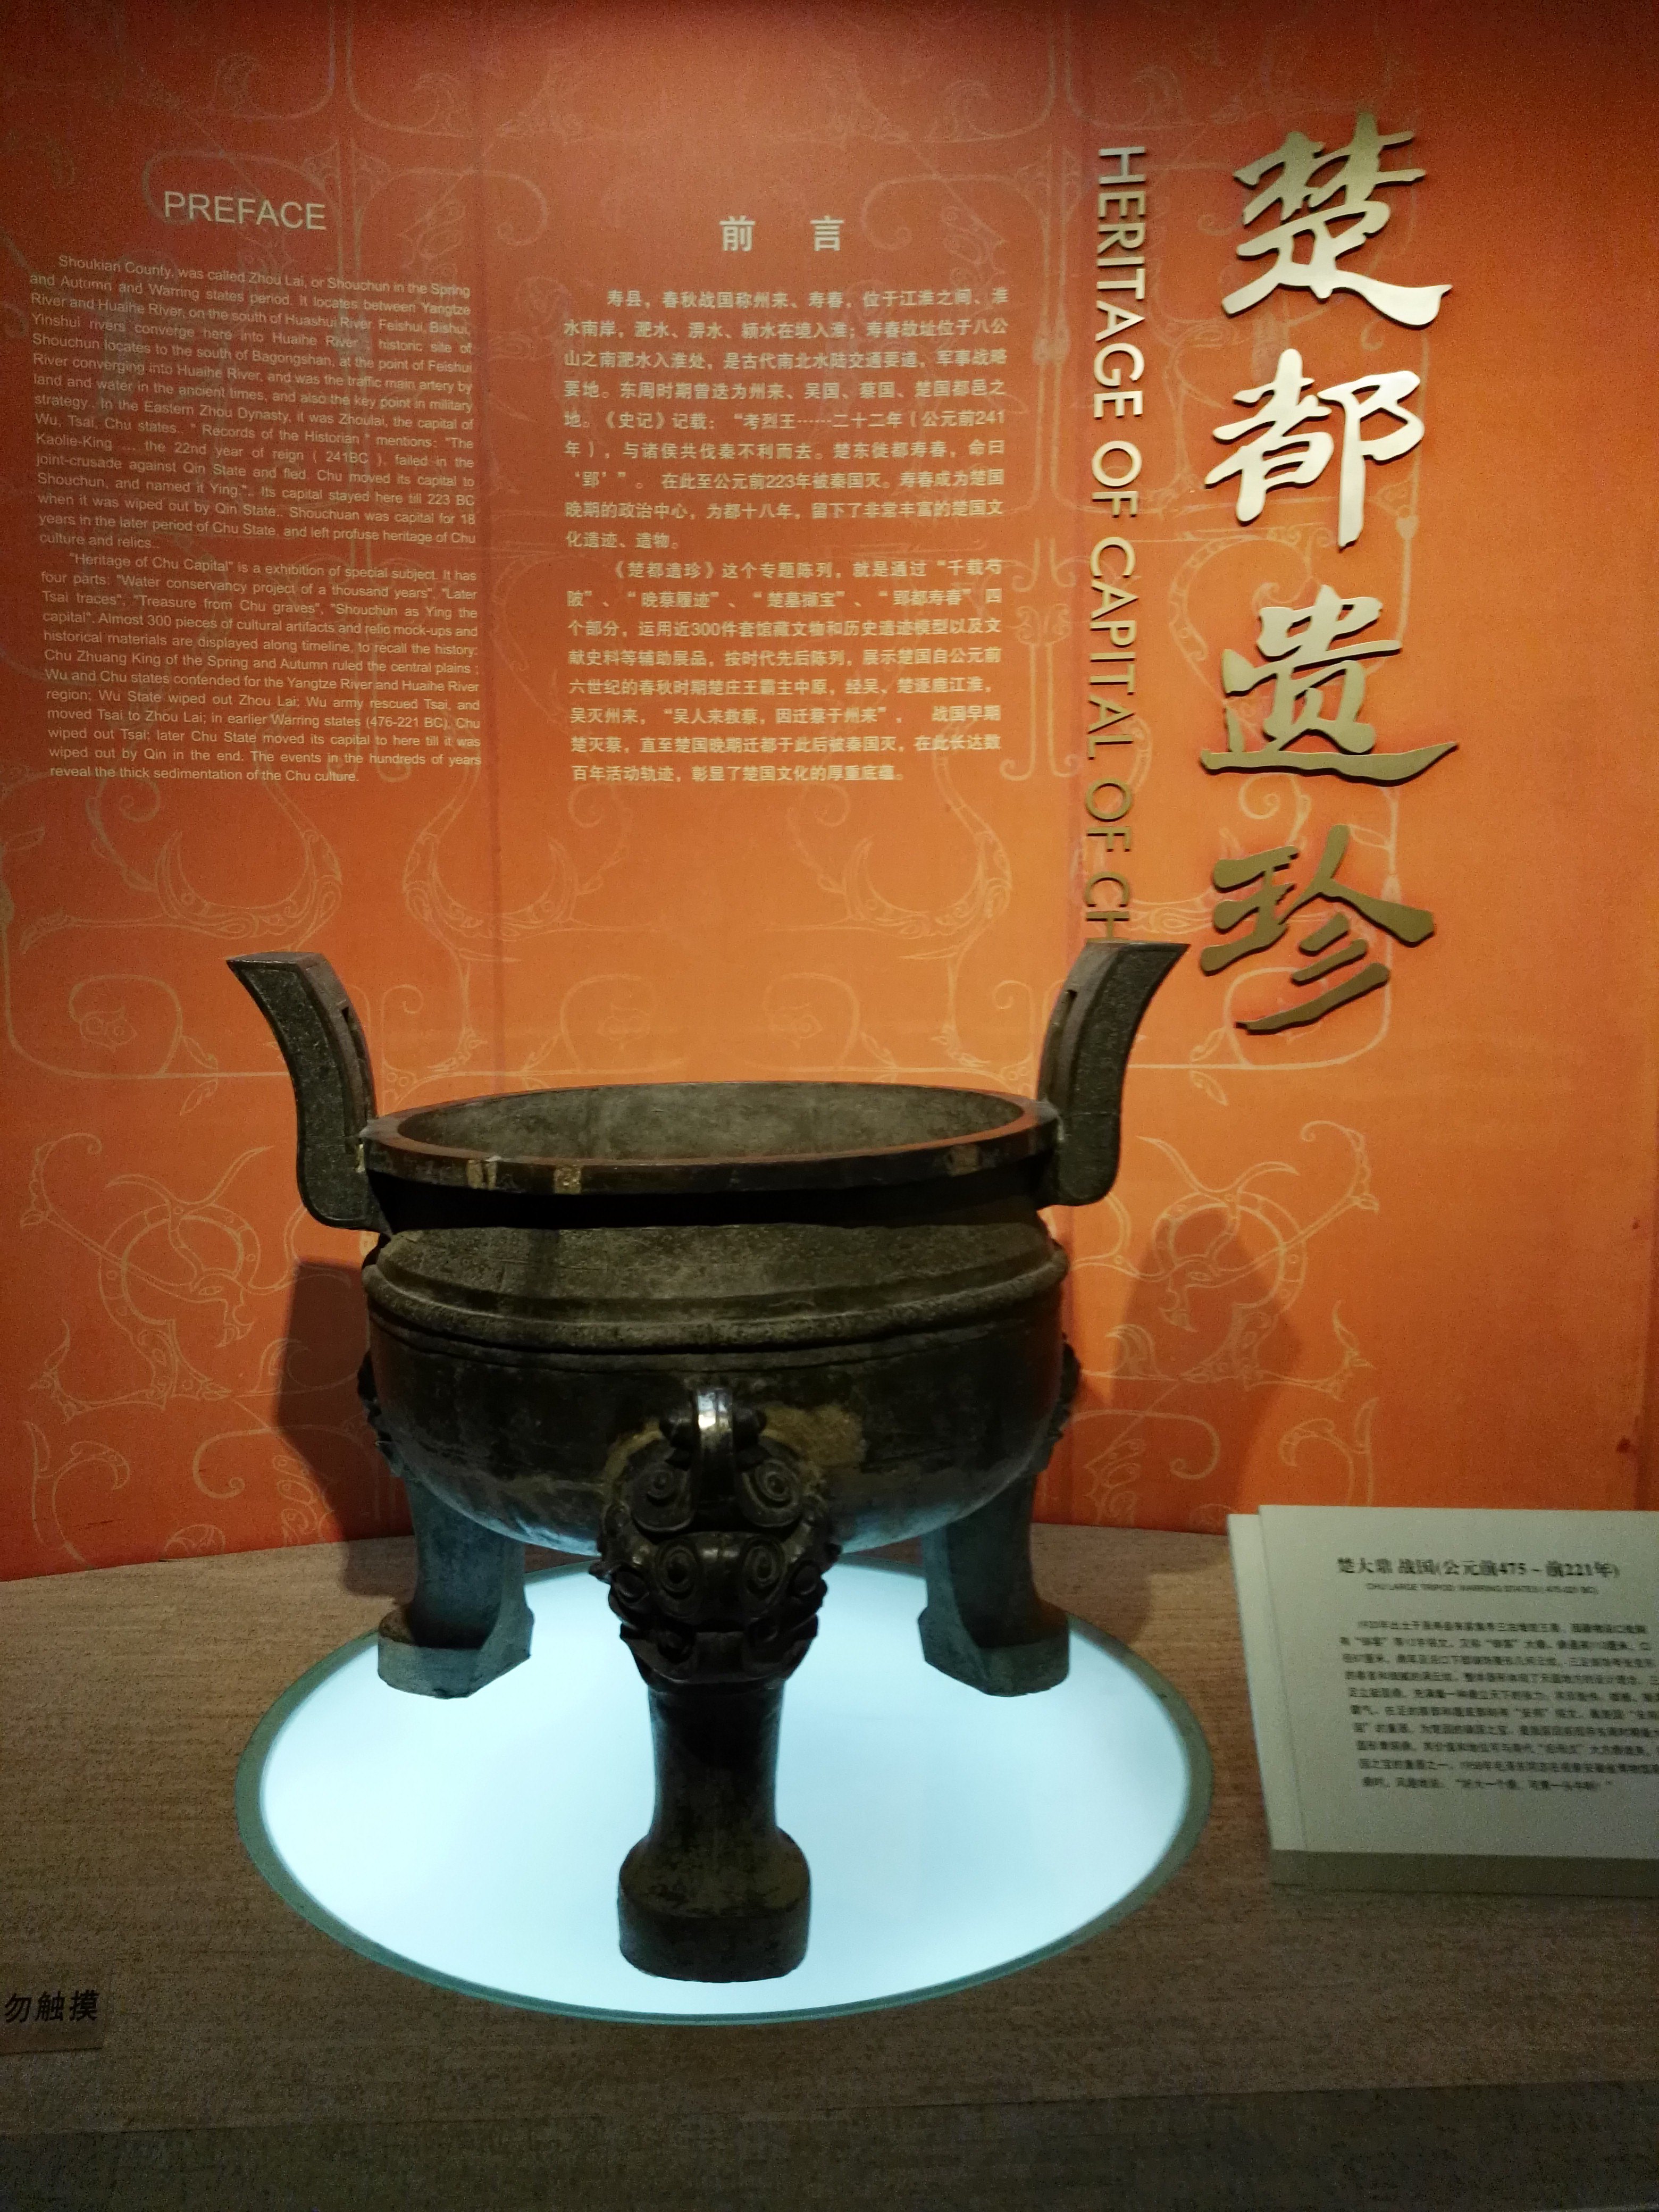 寿县博物馆